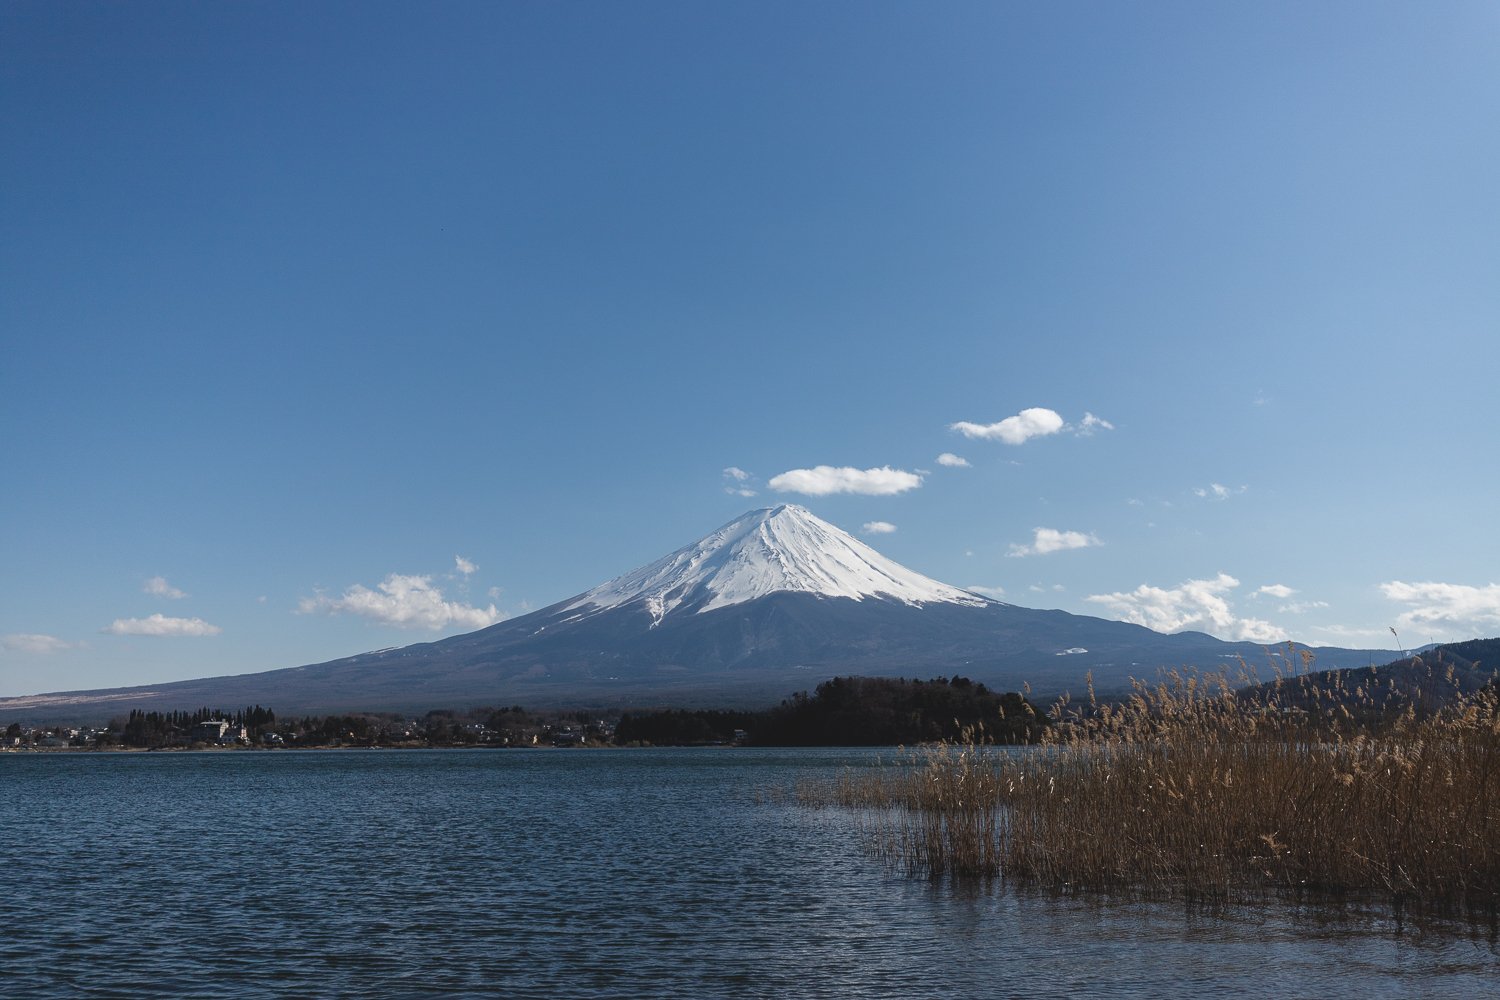 Vue sur le Mont Fuji avec le lac en premier plan. Le sommet de Fujisan est enneigé. Le ciel est bleu avec quelques nuages très éparses. Au premier plan, on voit quelques roseaux dans l'eau du lac. Je trouve cette photo très apaisante